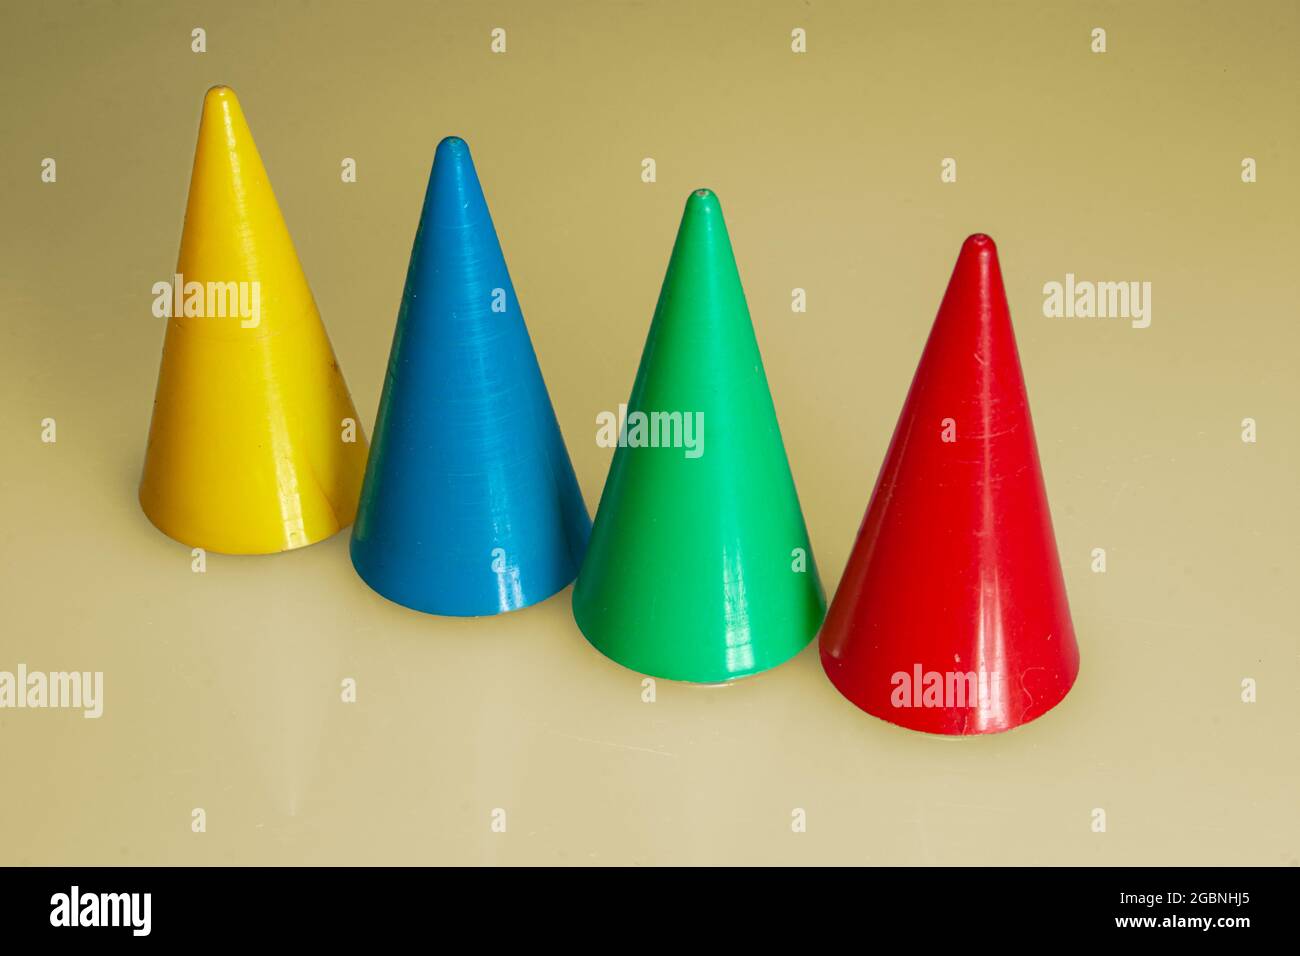 quatre pièces de jeu en forme de cône de couleur différente dans une rangée sur fond jaune ocre Banque D'Images